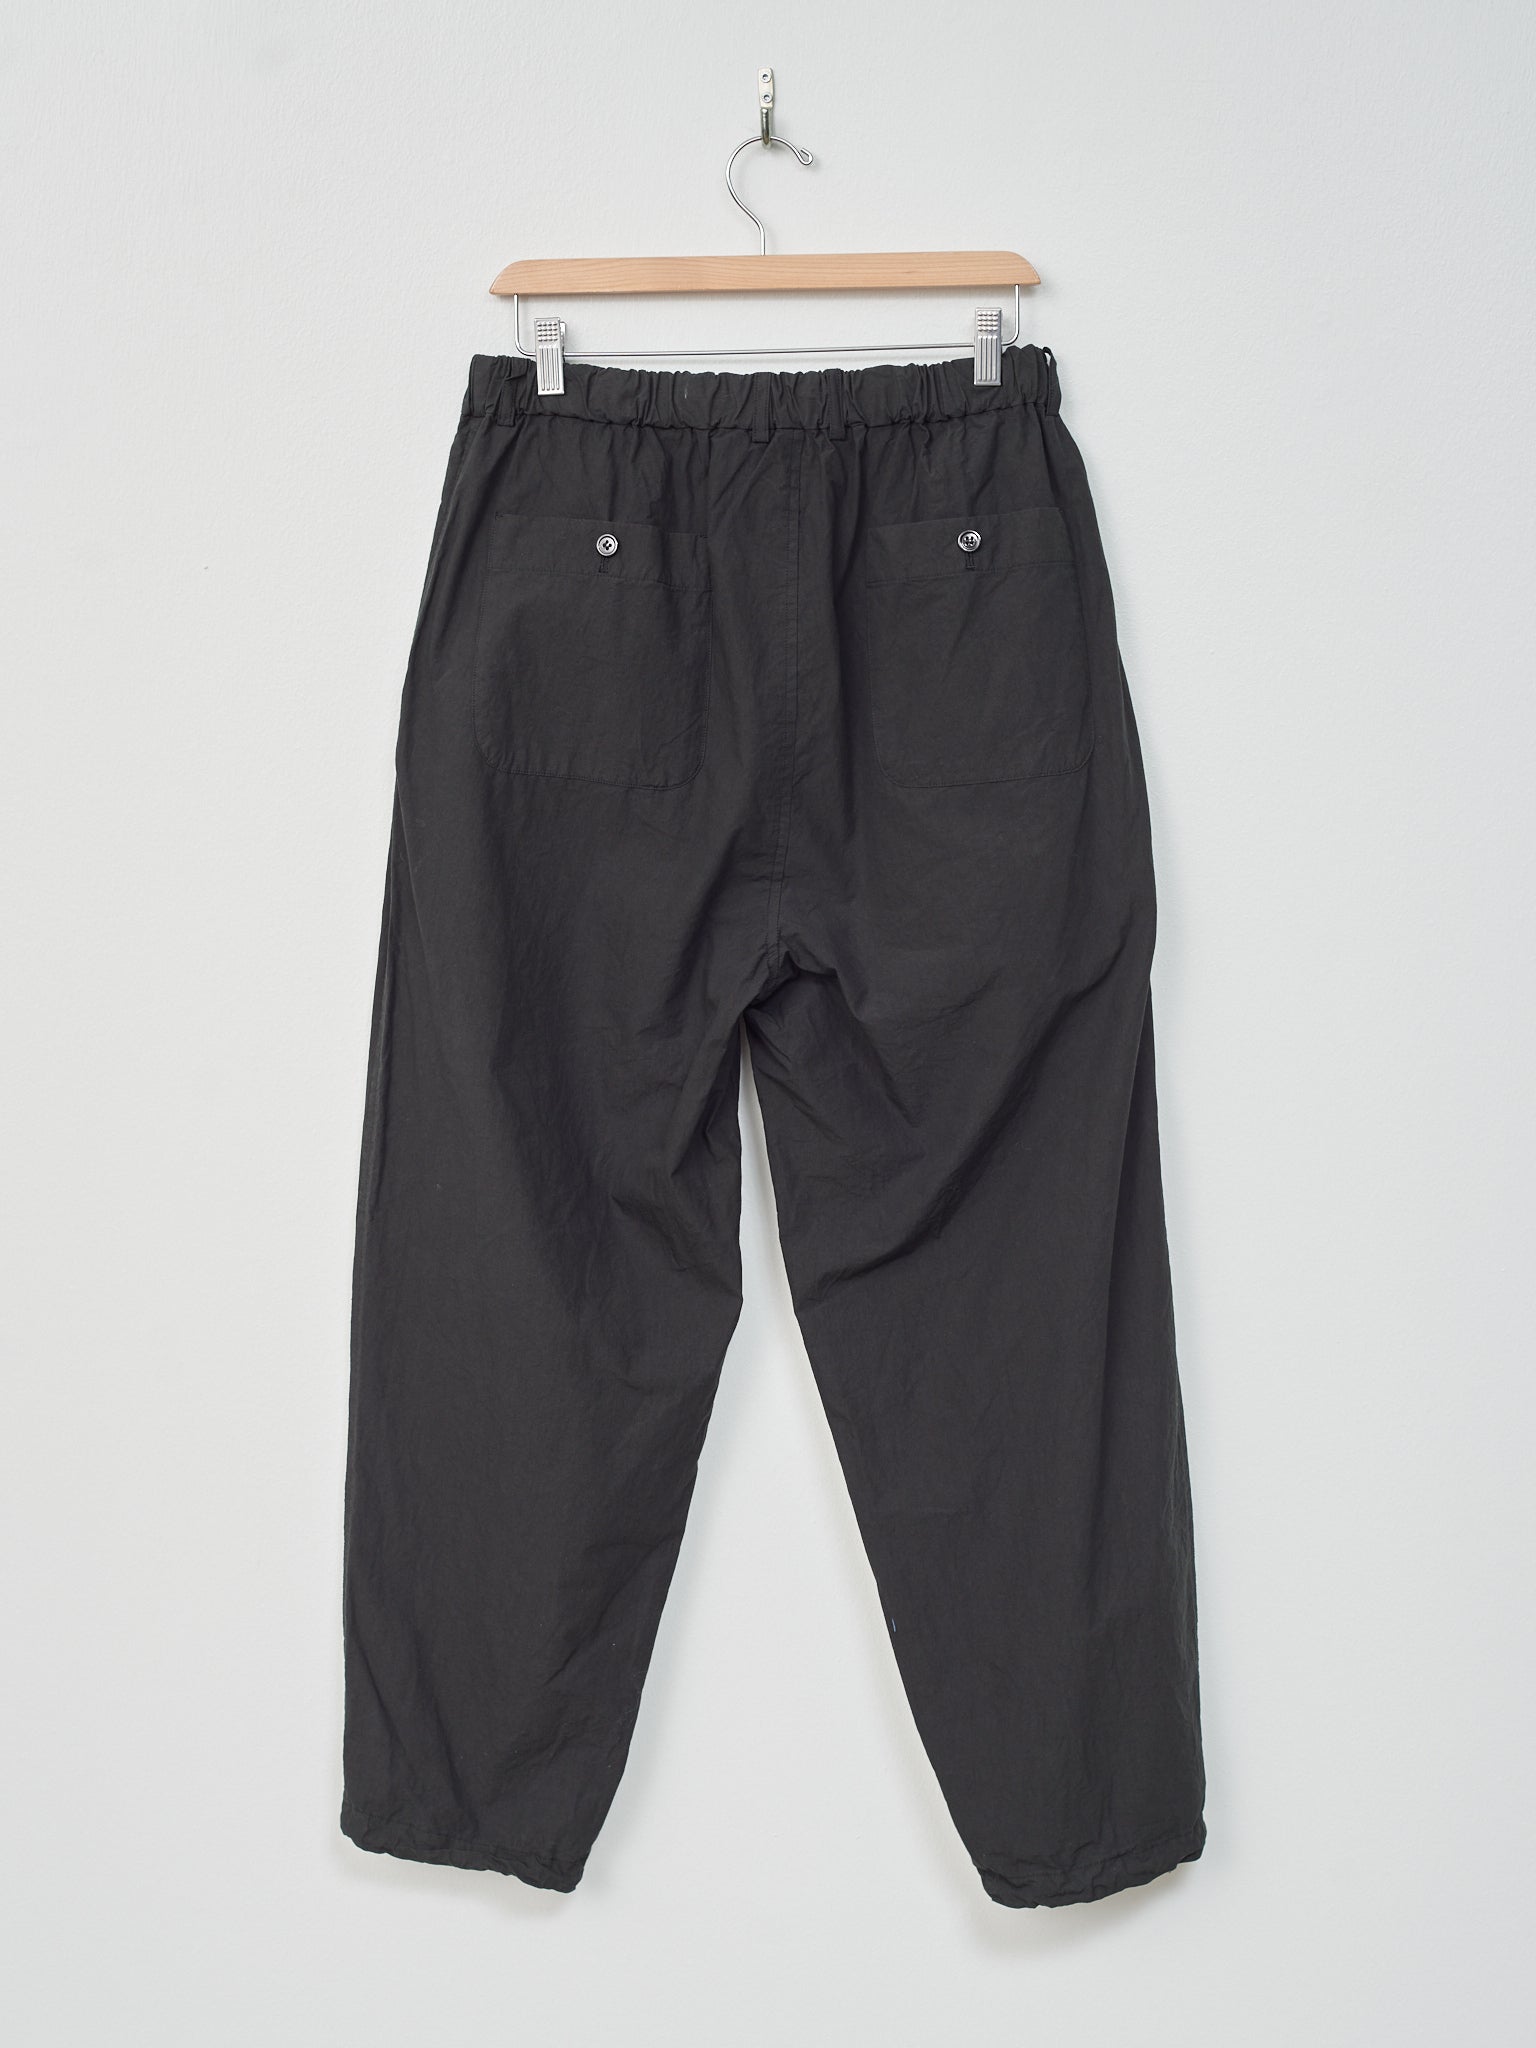 Namu Shop - Yoko Sakamoto Tapered Pants- Black